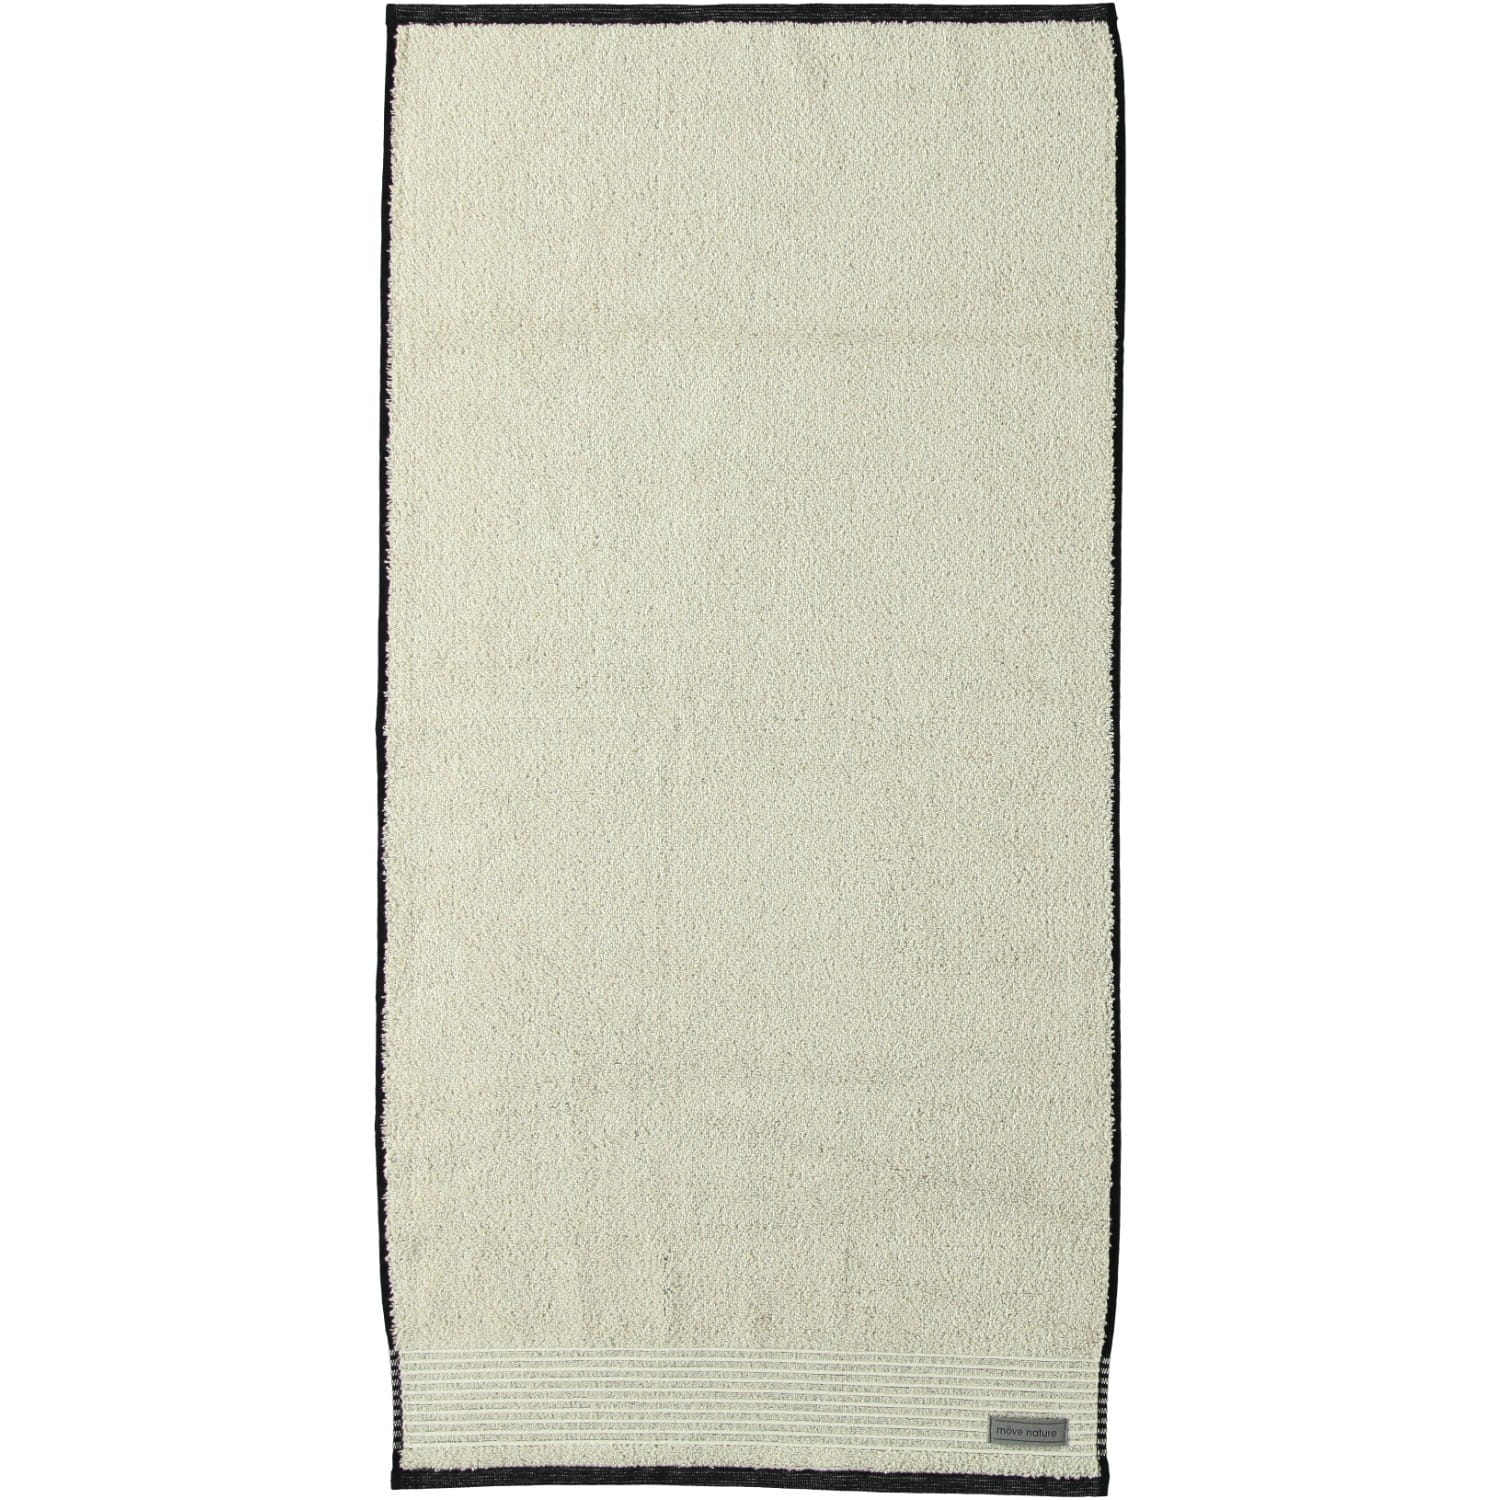 Möve - Eden - Melange mit Biesenbordüre - Farbe: natur - 081 (1-0151/8944)  - Handtuch 50x100 cm | Handtuch | Handtücher